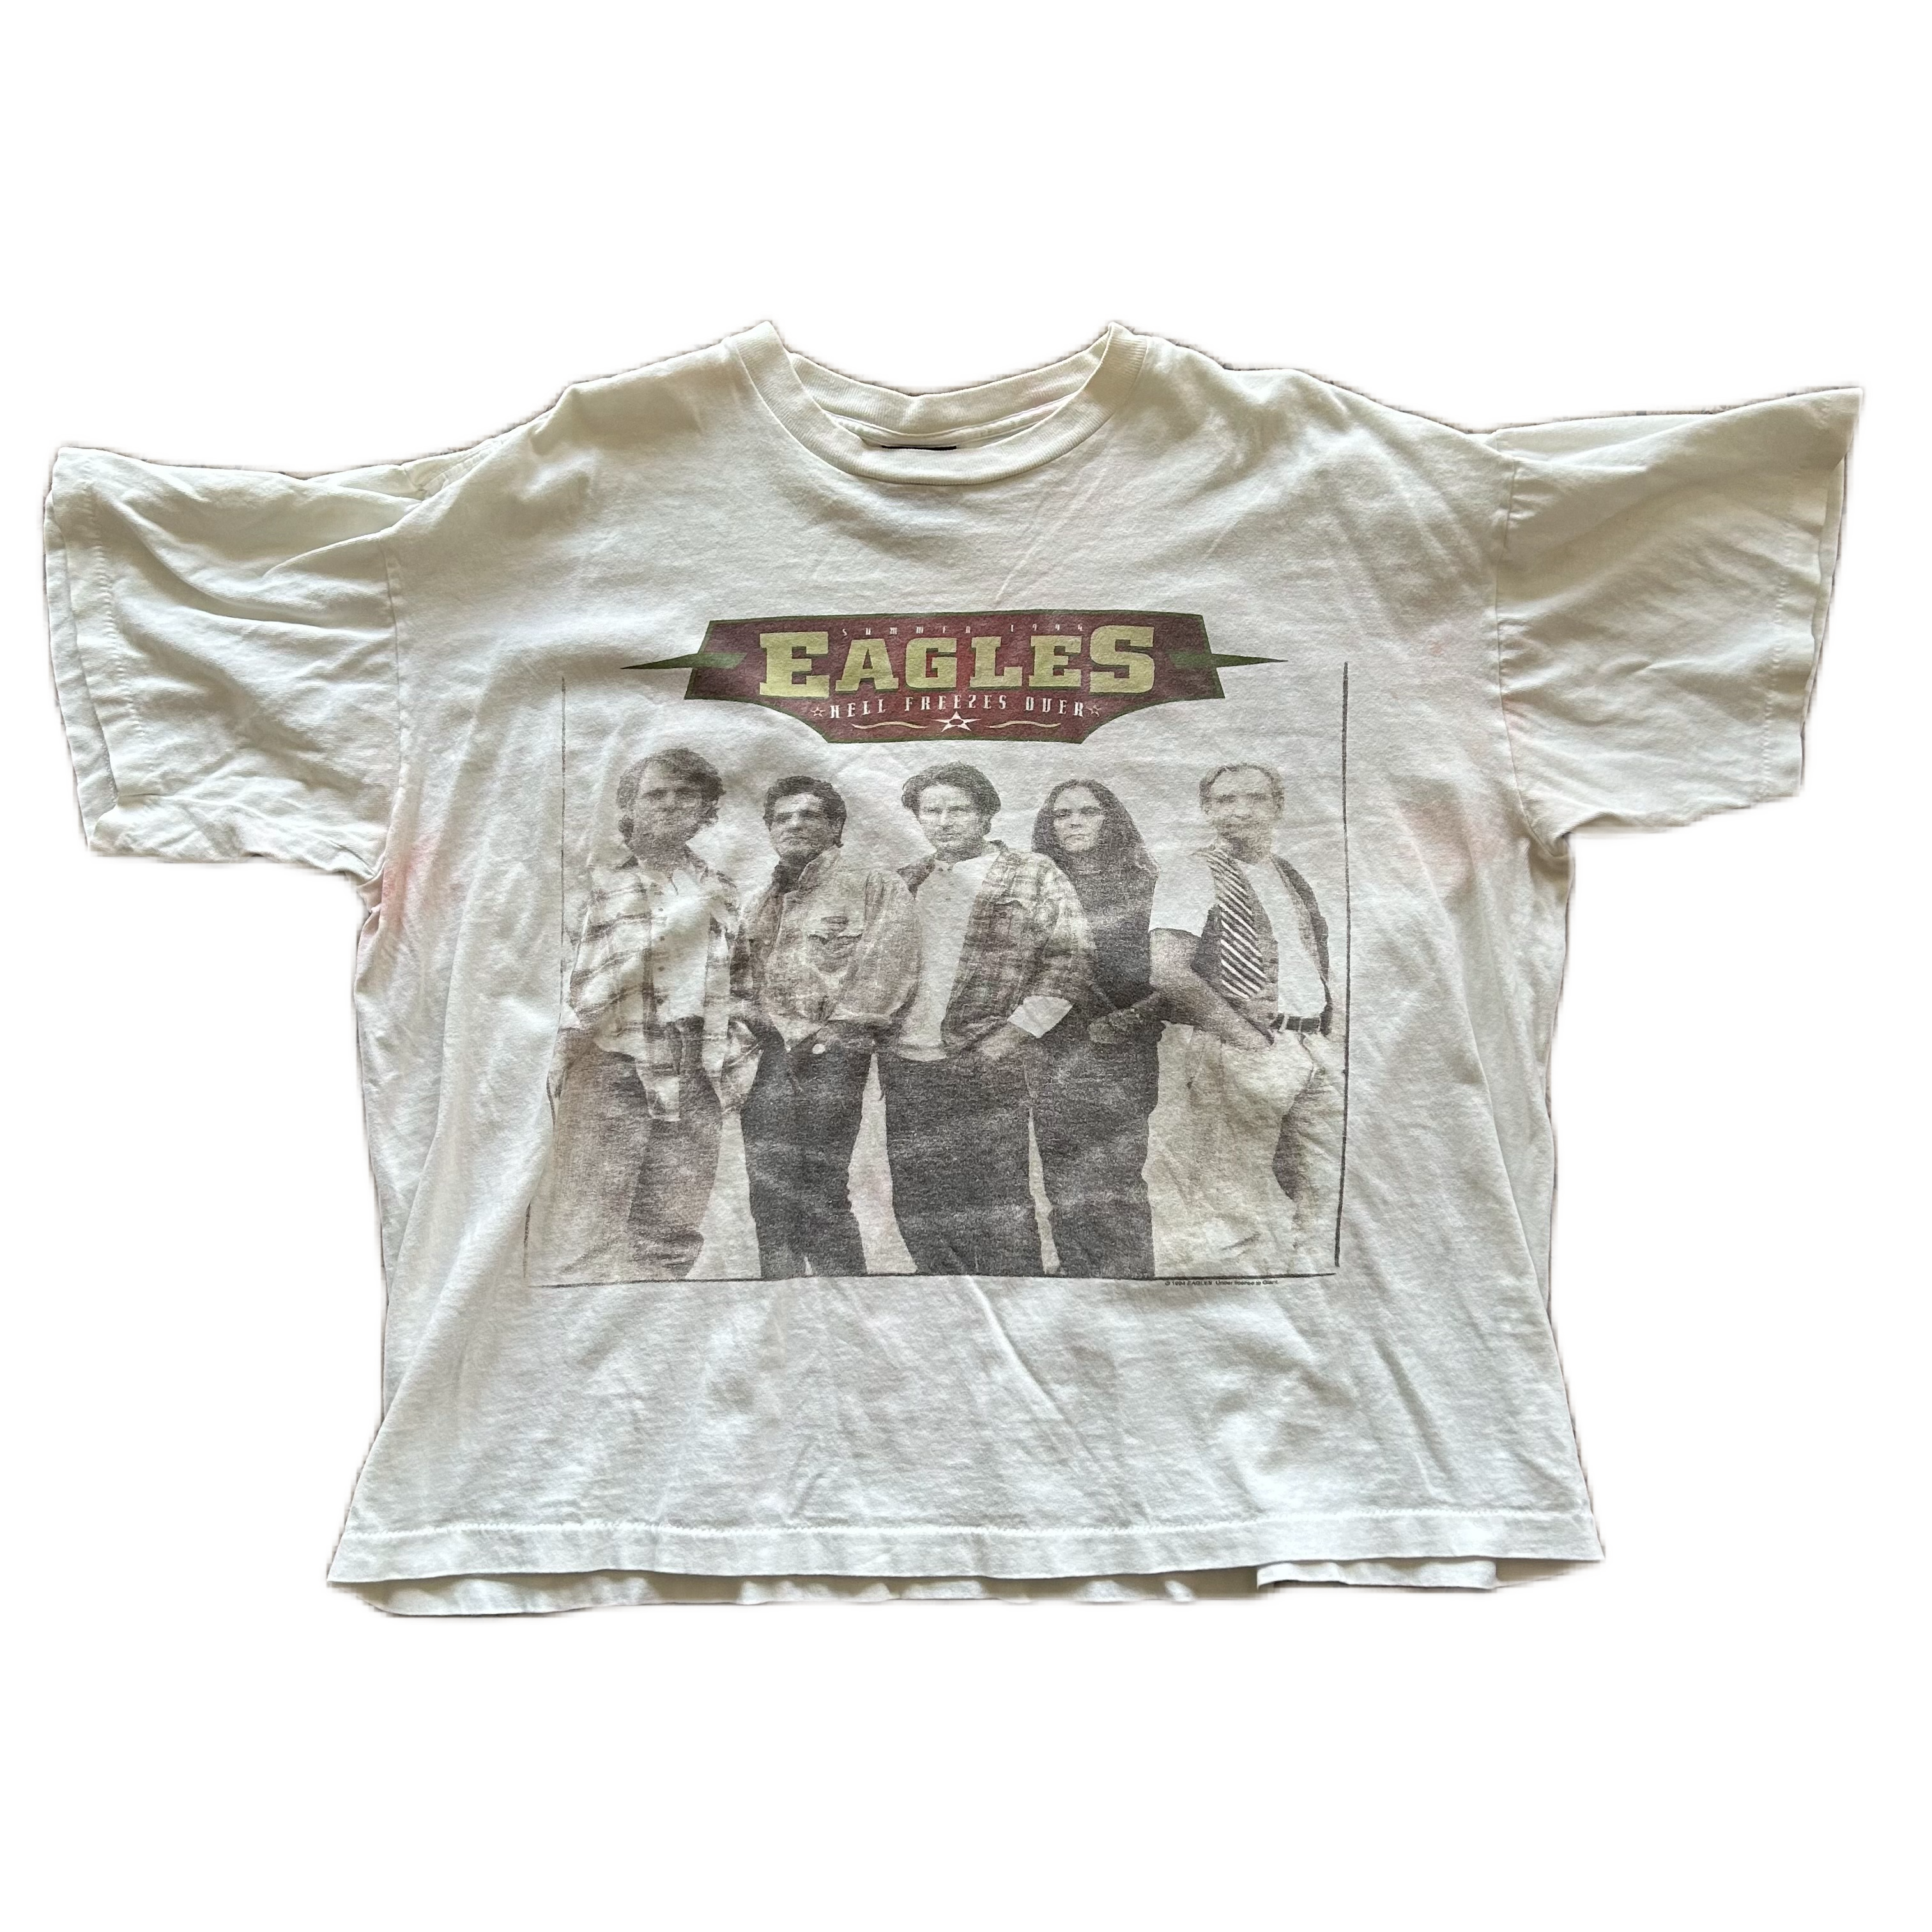 Vintage 1990s Eagles Tee